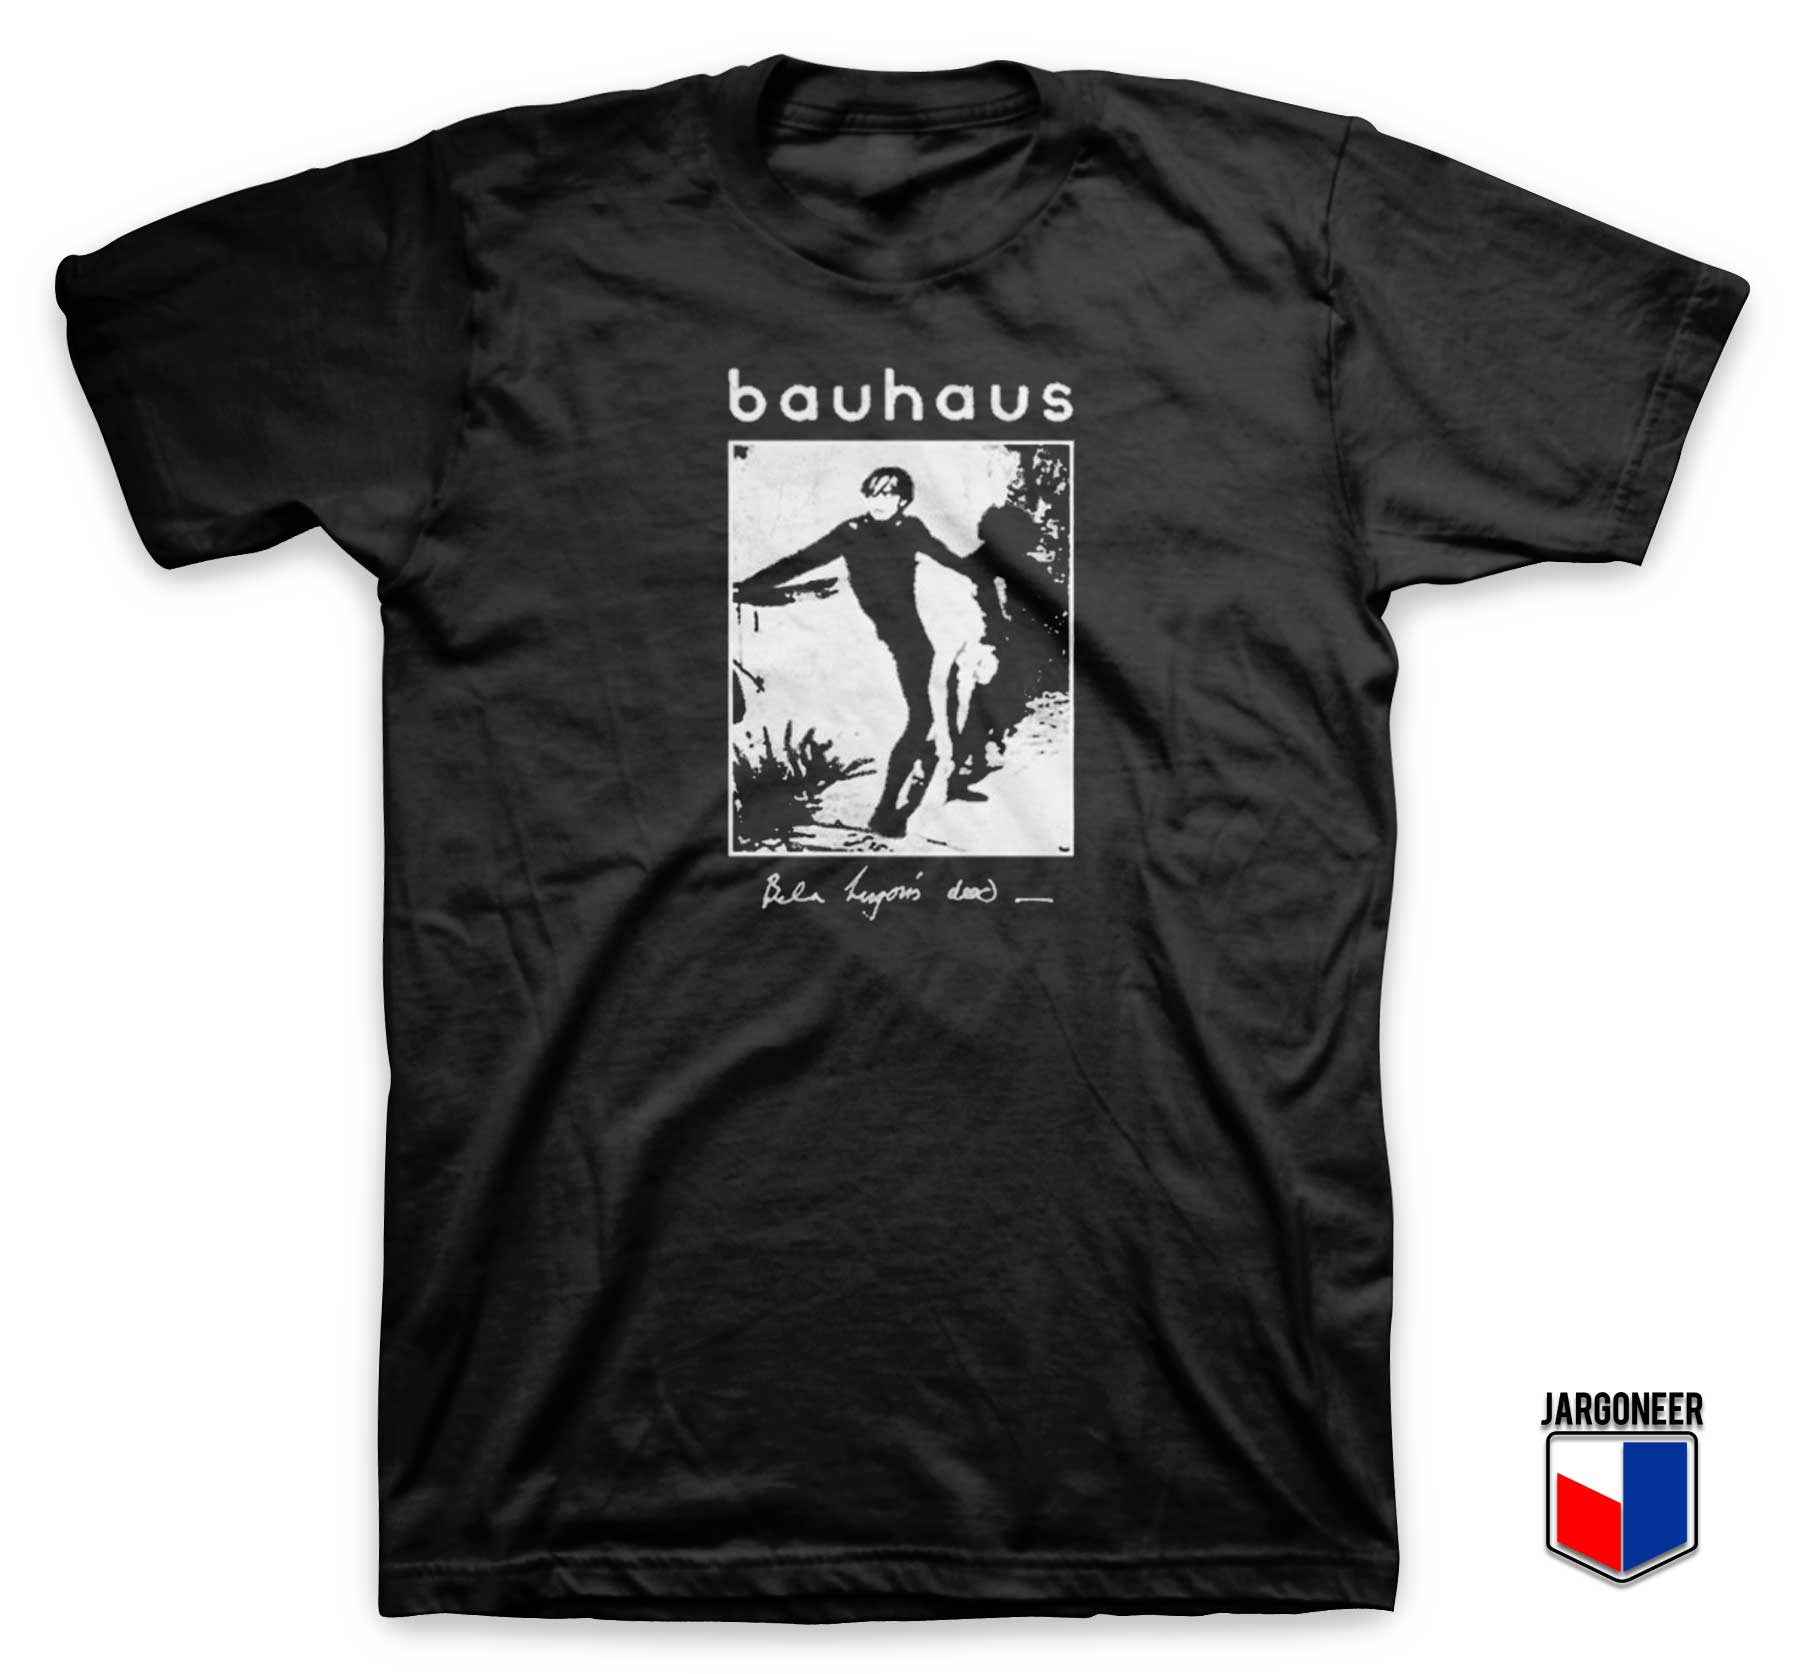 Bauhaus Bela Lugosis Dead T Shirt - Shop Unique Graphic Cool Shirt Designs